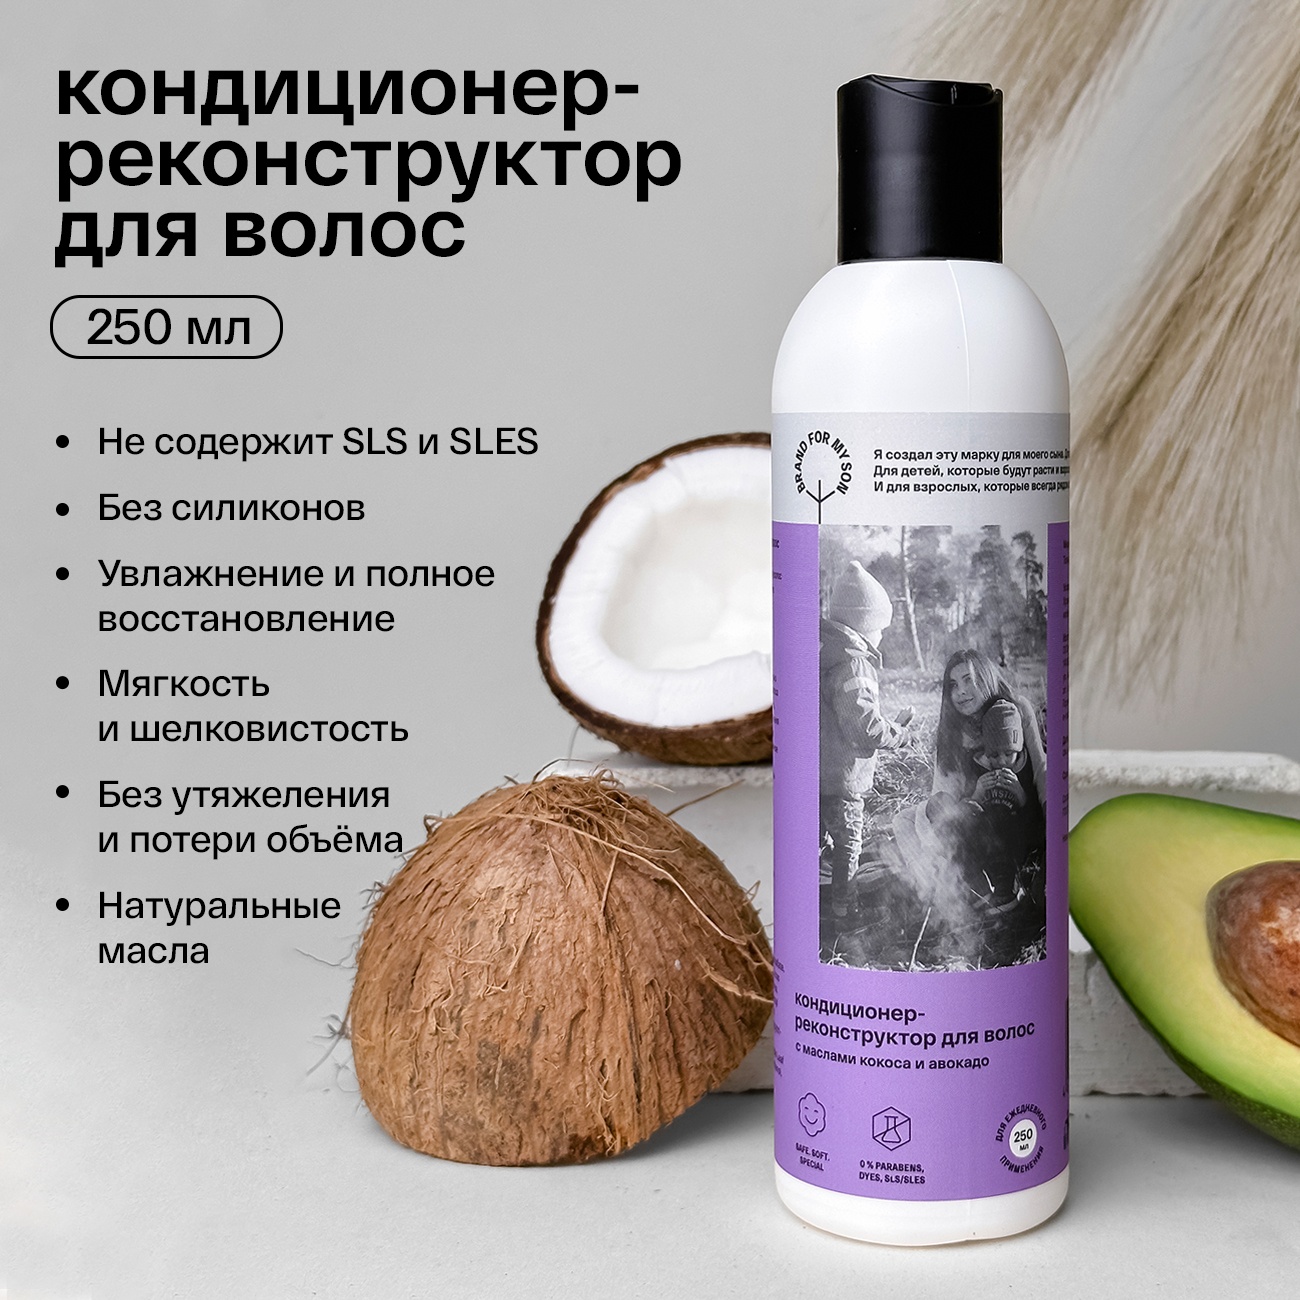 Кондиционер-реконструктор для волос с маслами кокоса и авокадо купить в VISAGEHALL